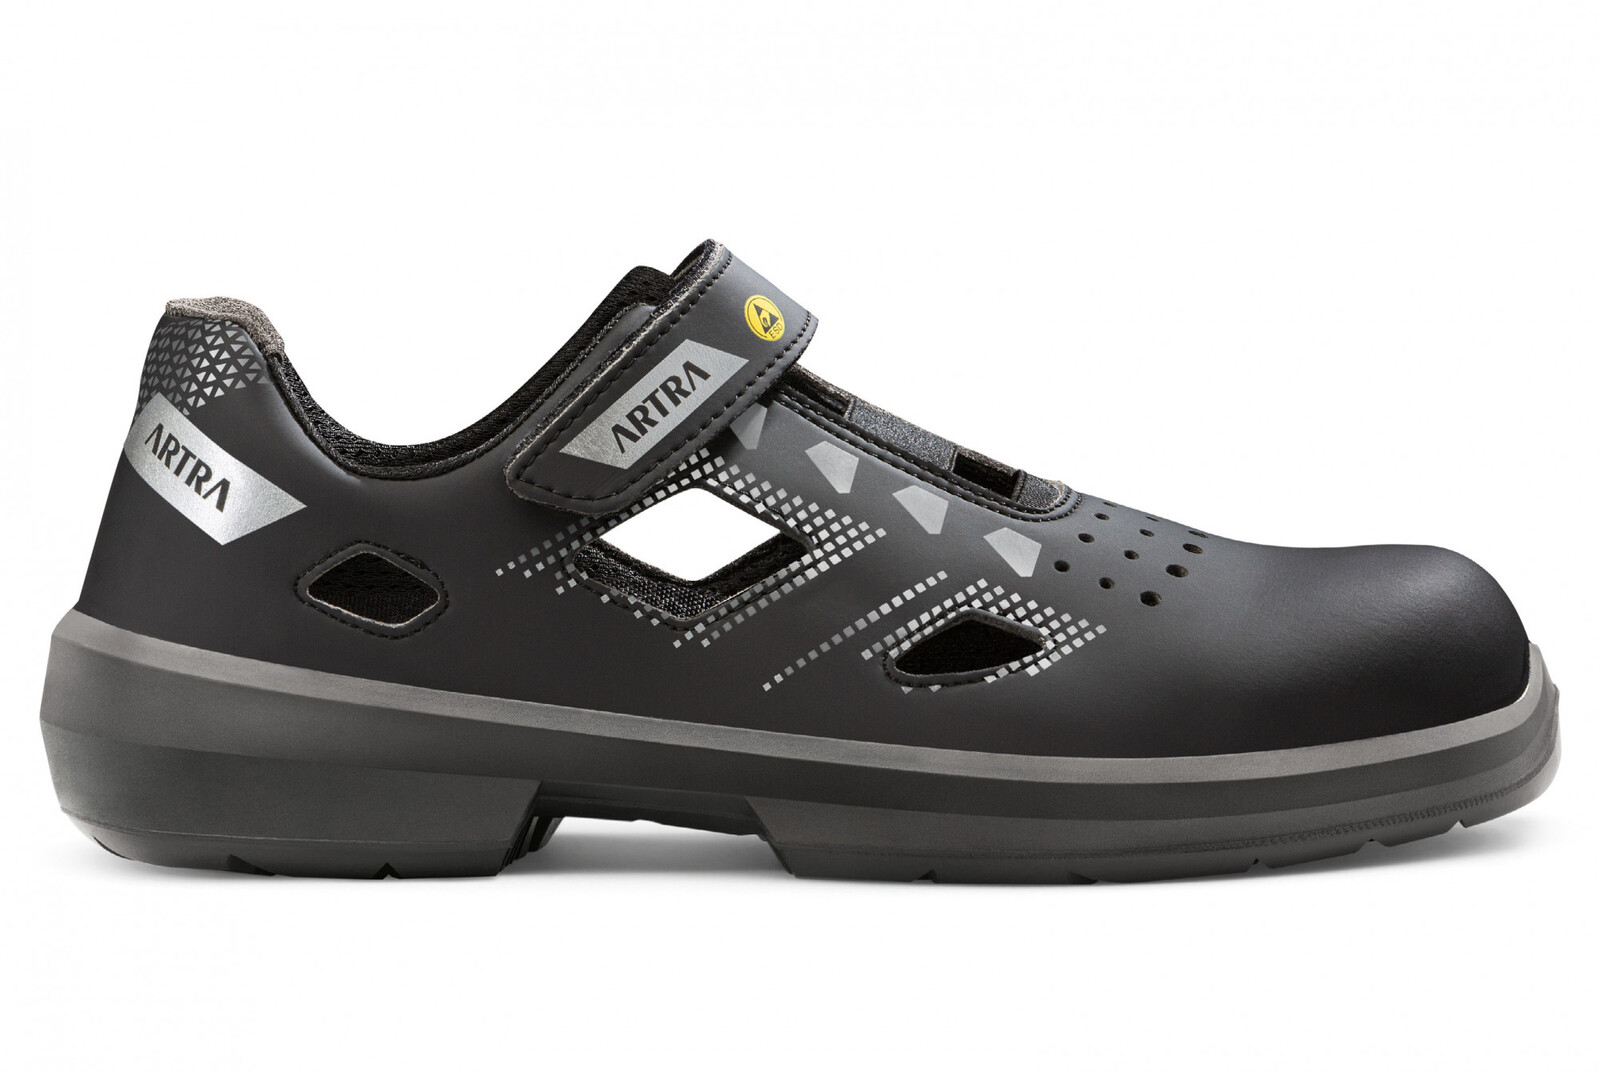 Bezpečnostné sandále Artra Arzo 805 676560 S1 SRC ESD MF - veľkosť: 39, farba: čierna/sivá